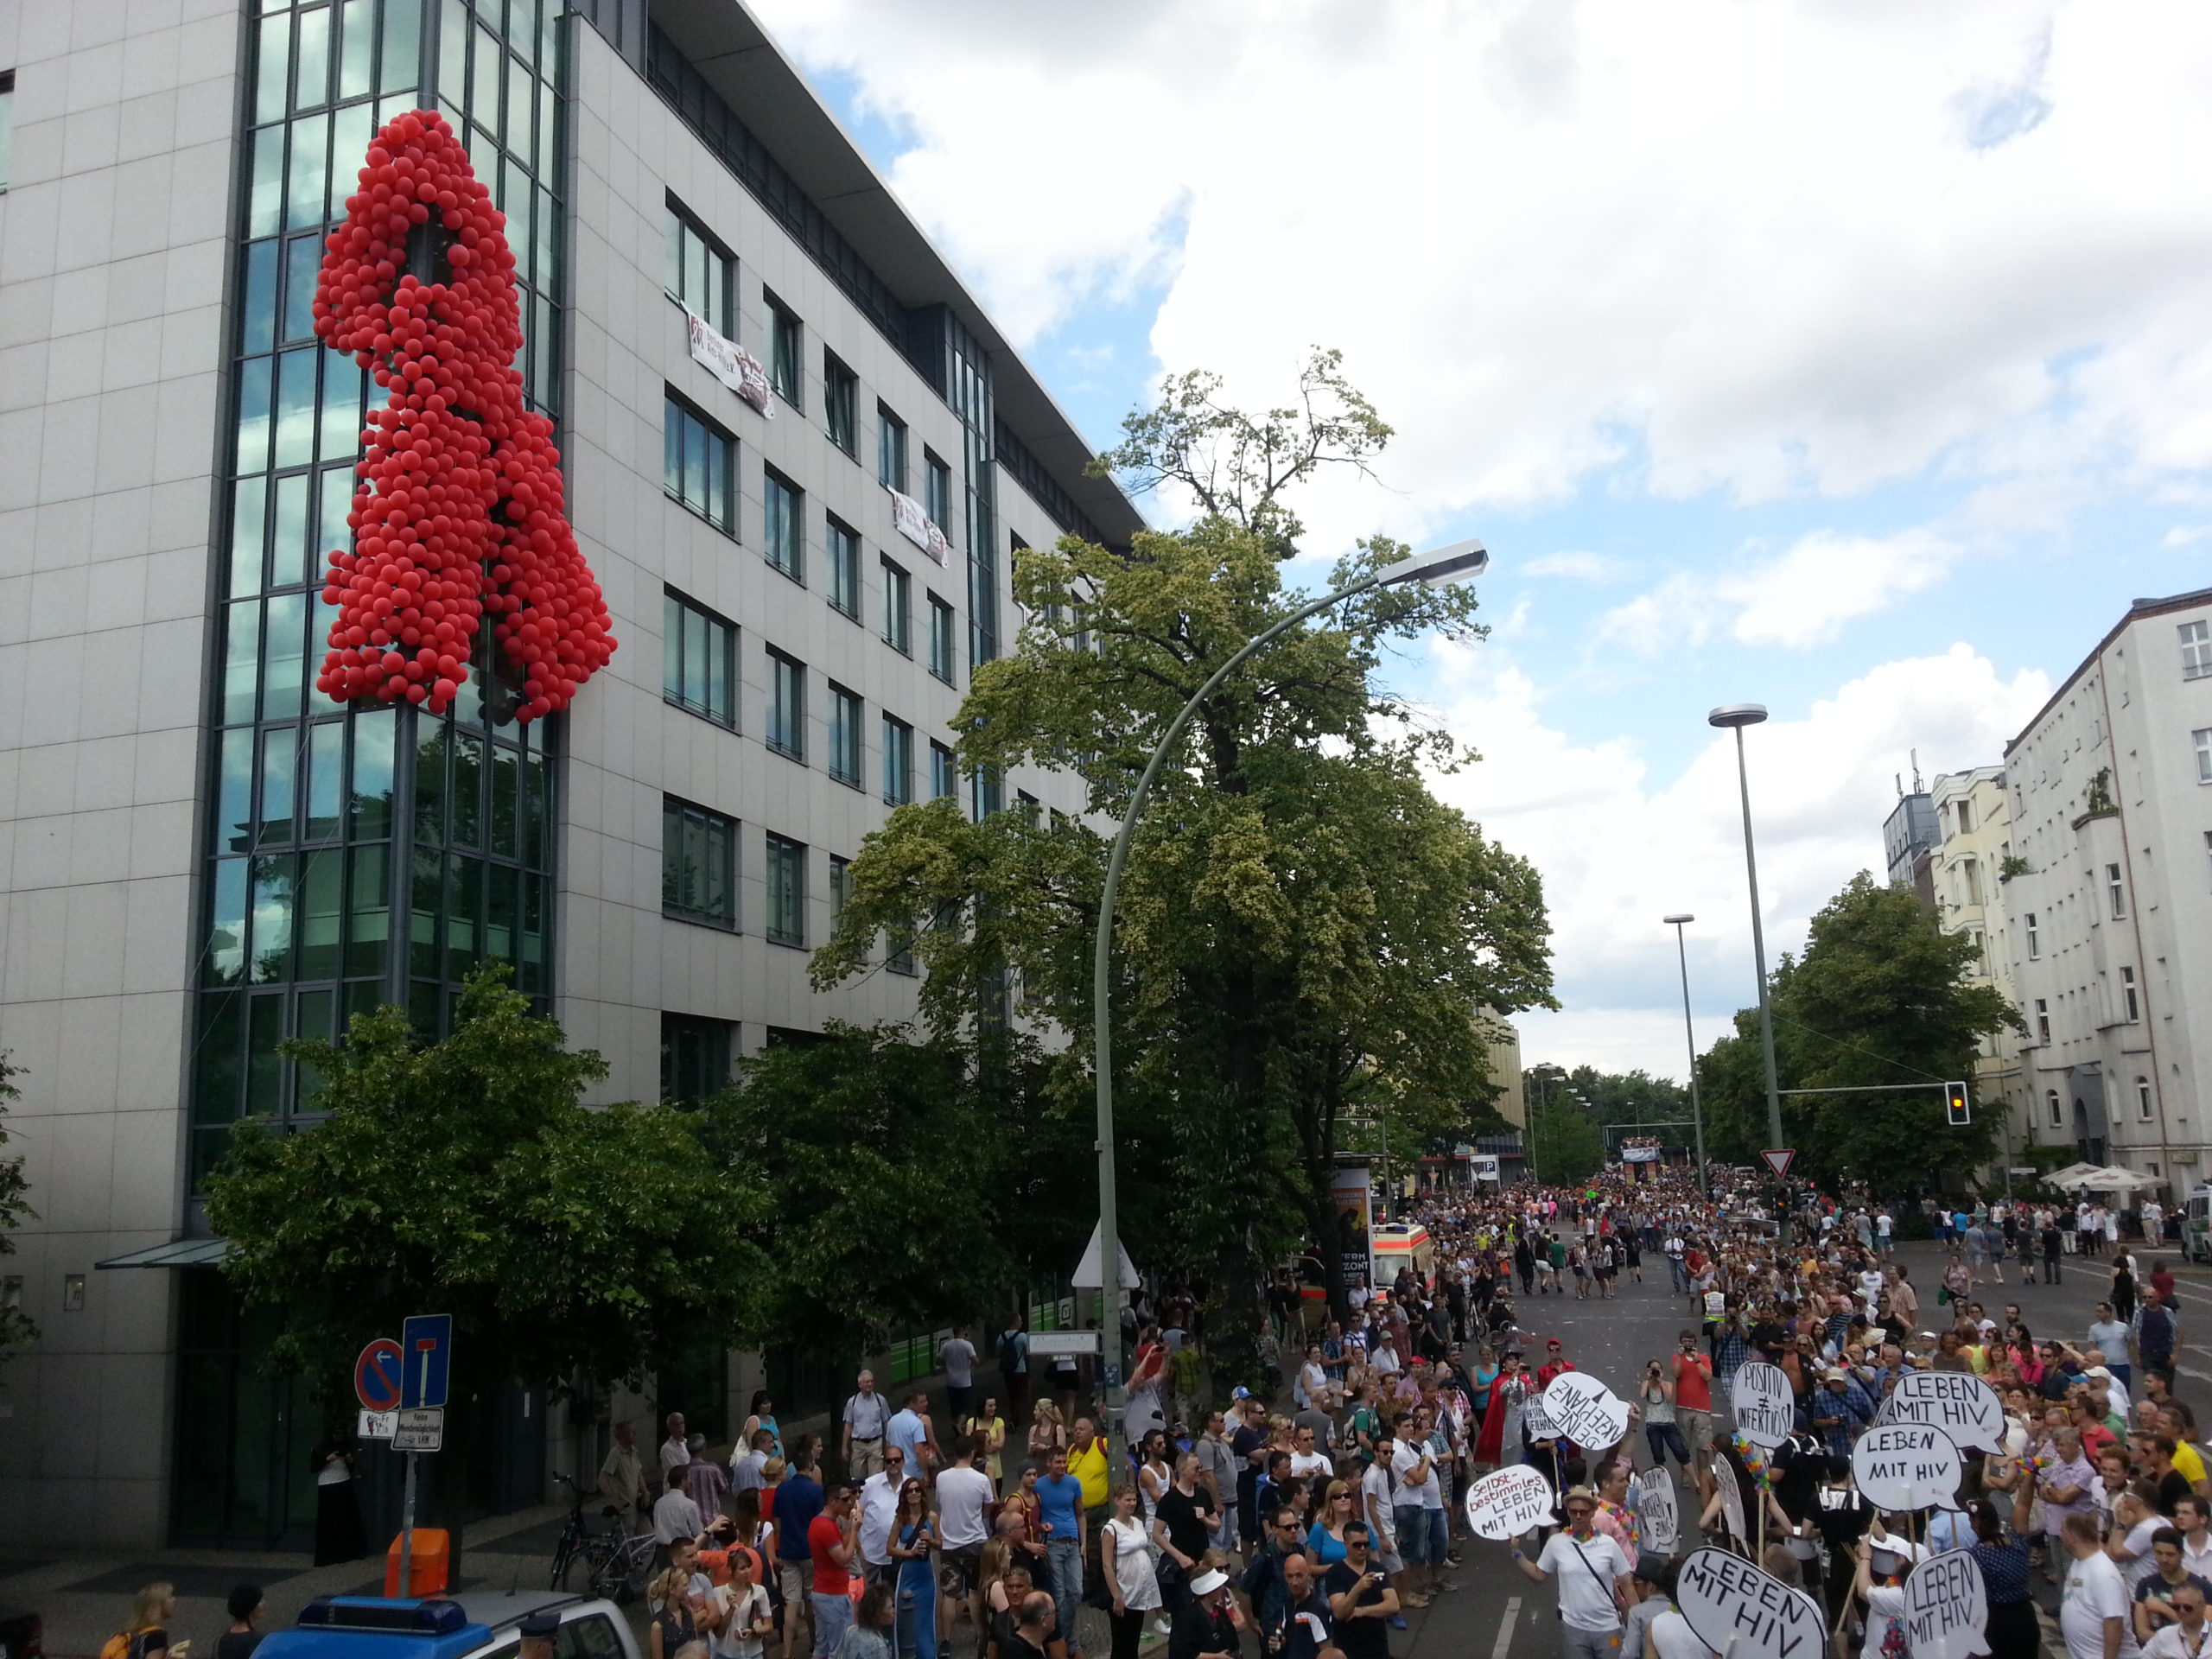 (c) Berlin-aidshilfe.de